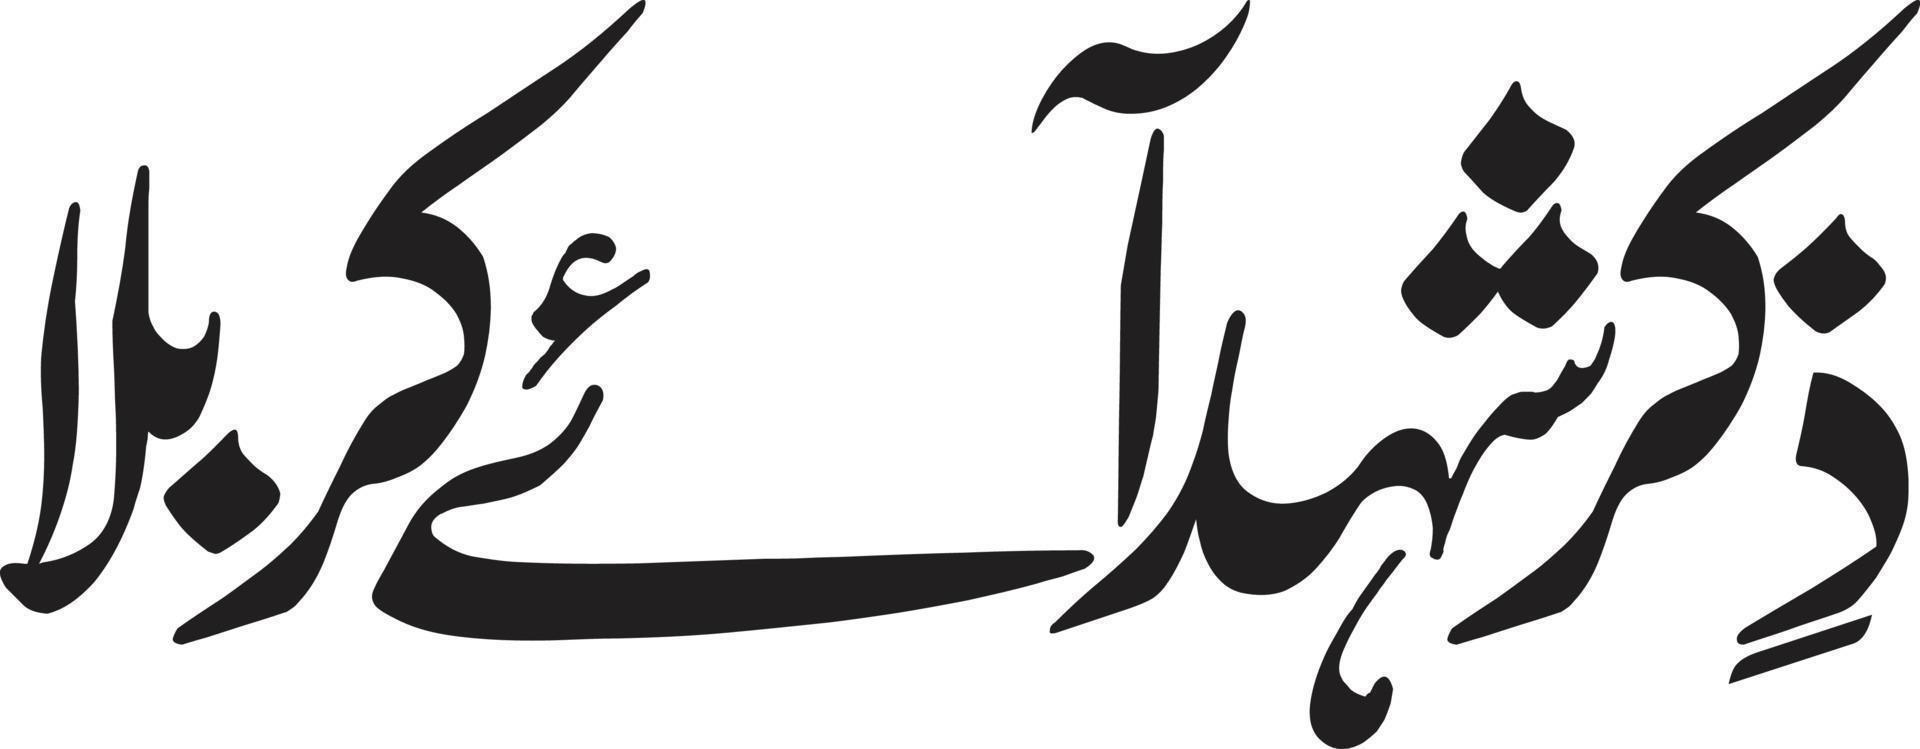 ziker sheed aey karbla caligrafía urdu islámica vector libre